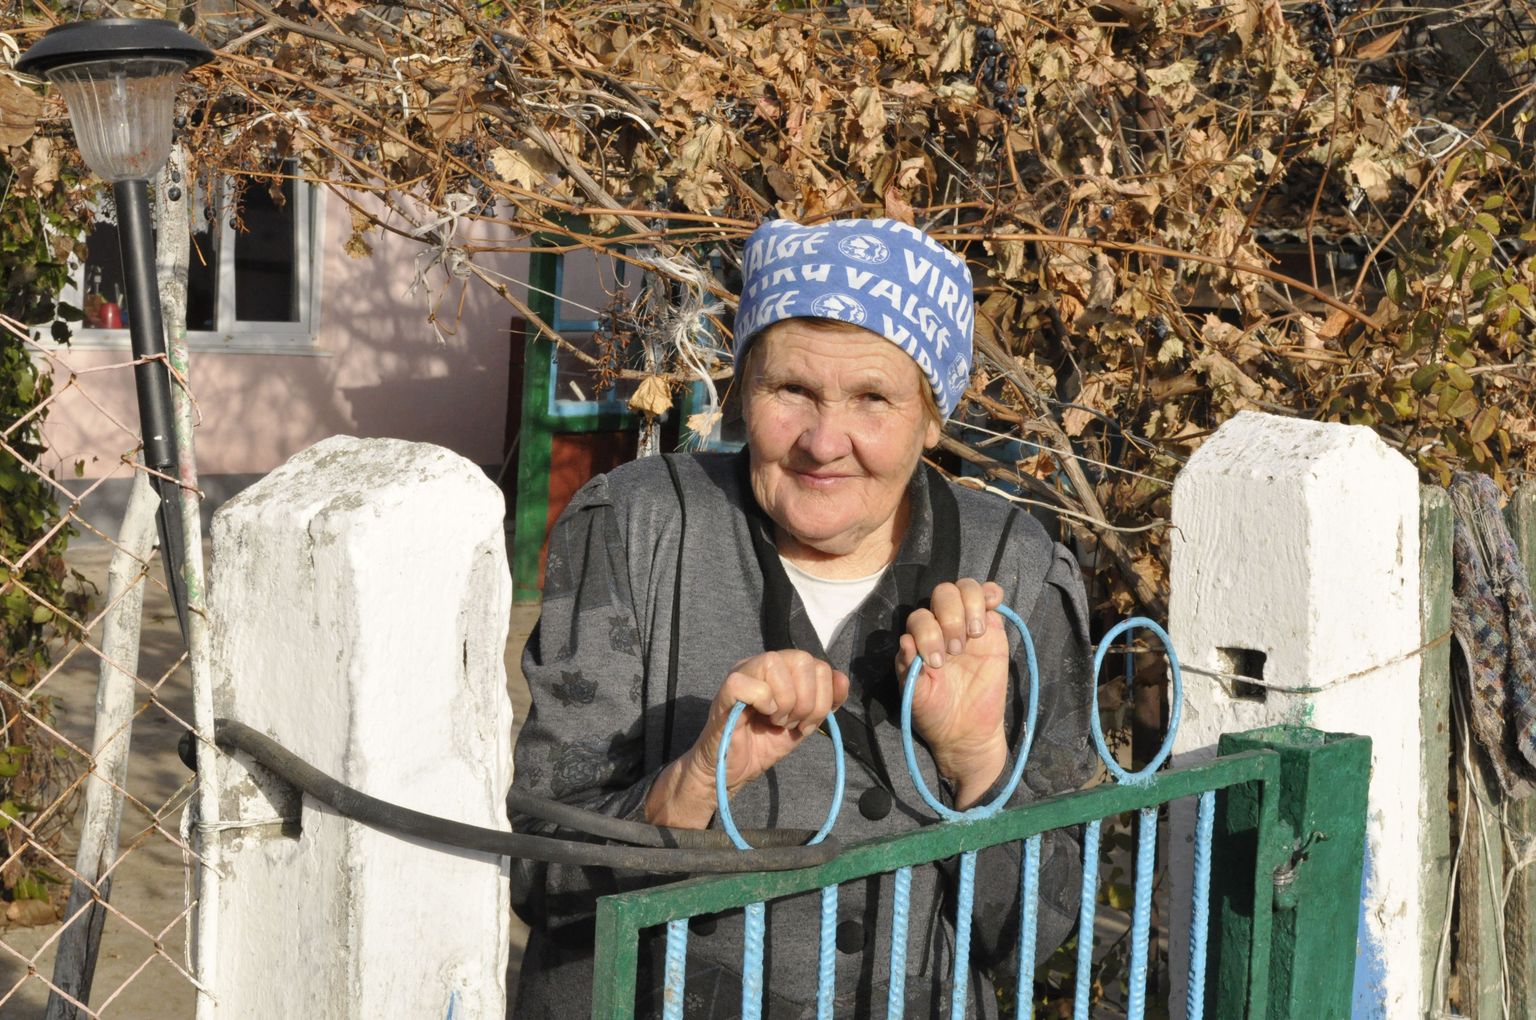 Elu aeg kolhoosis viinamarjakasvatuses töölise, postiljoni ja lasteaiakasvatajana töötanud Rita tähistas sügisel 75. juubelit. Ta on vanuselt enam-vähem täpselt Krasnodarka kõige noorema ja kõige vanema puhastverd eestlase vahel: Valentina, neiupõlvenimega Viidermann, sai 90, ja Lootuse Sass on 55.